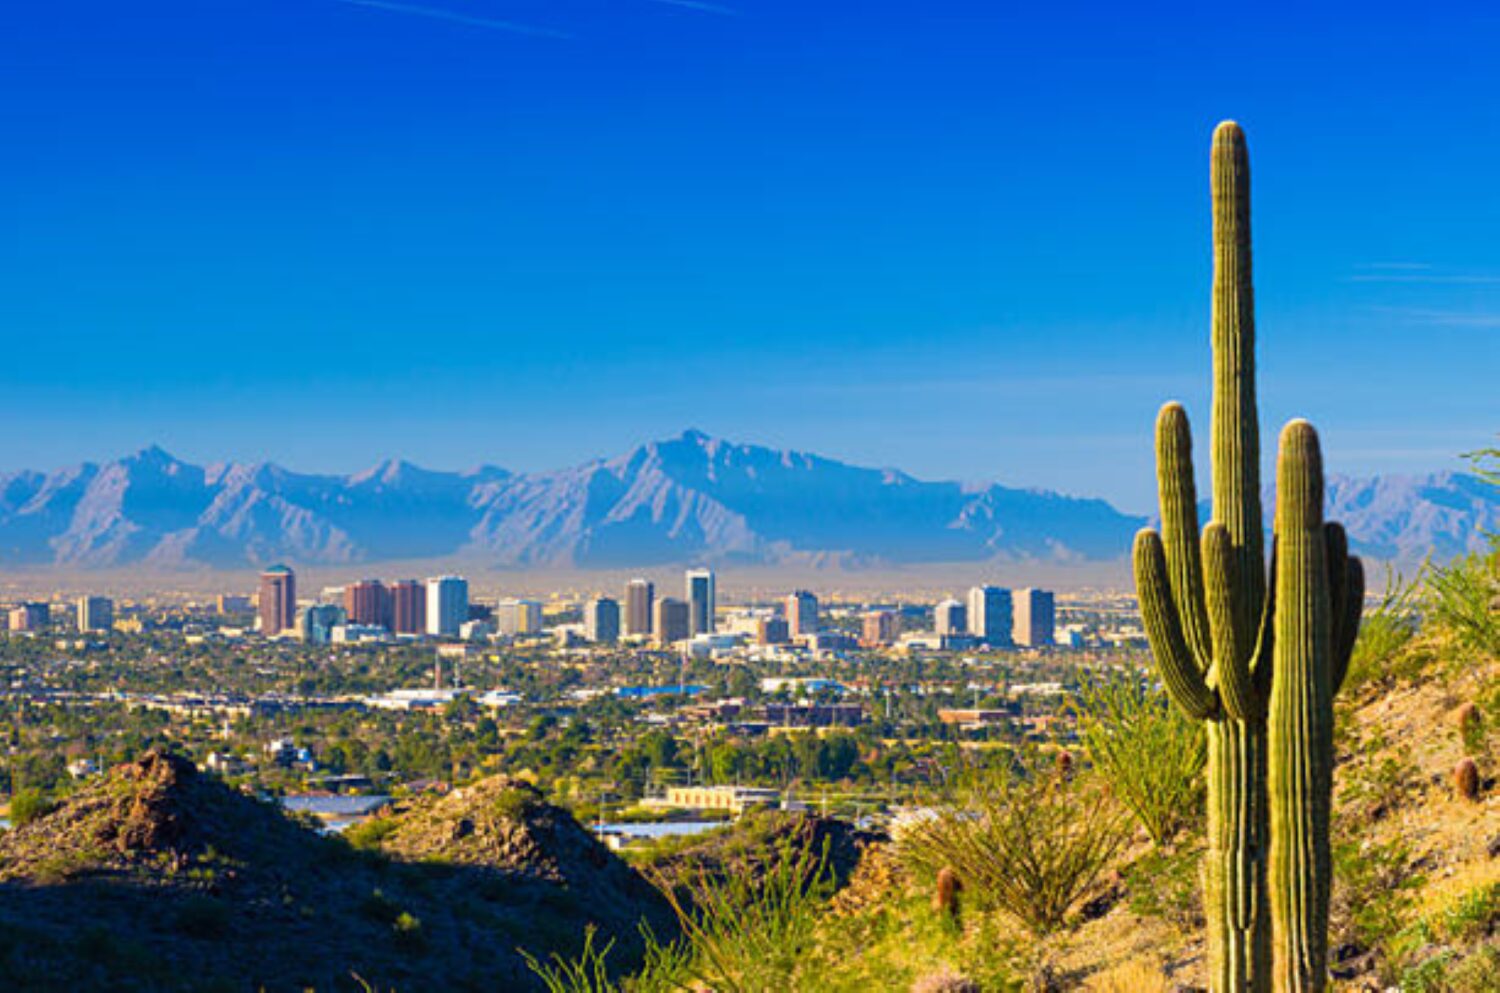 Phoenix, AZ Scenic View of the City